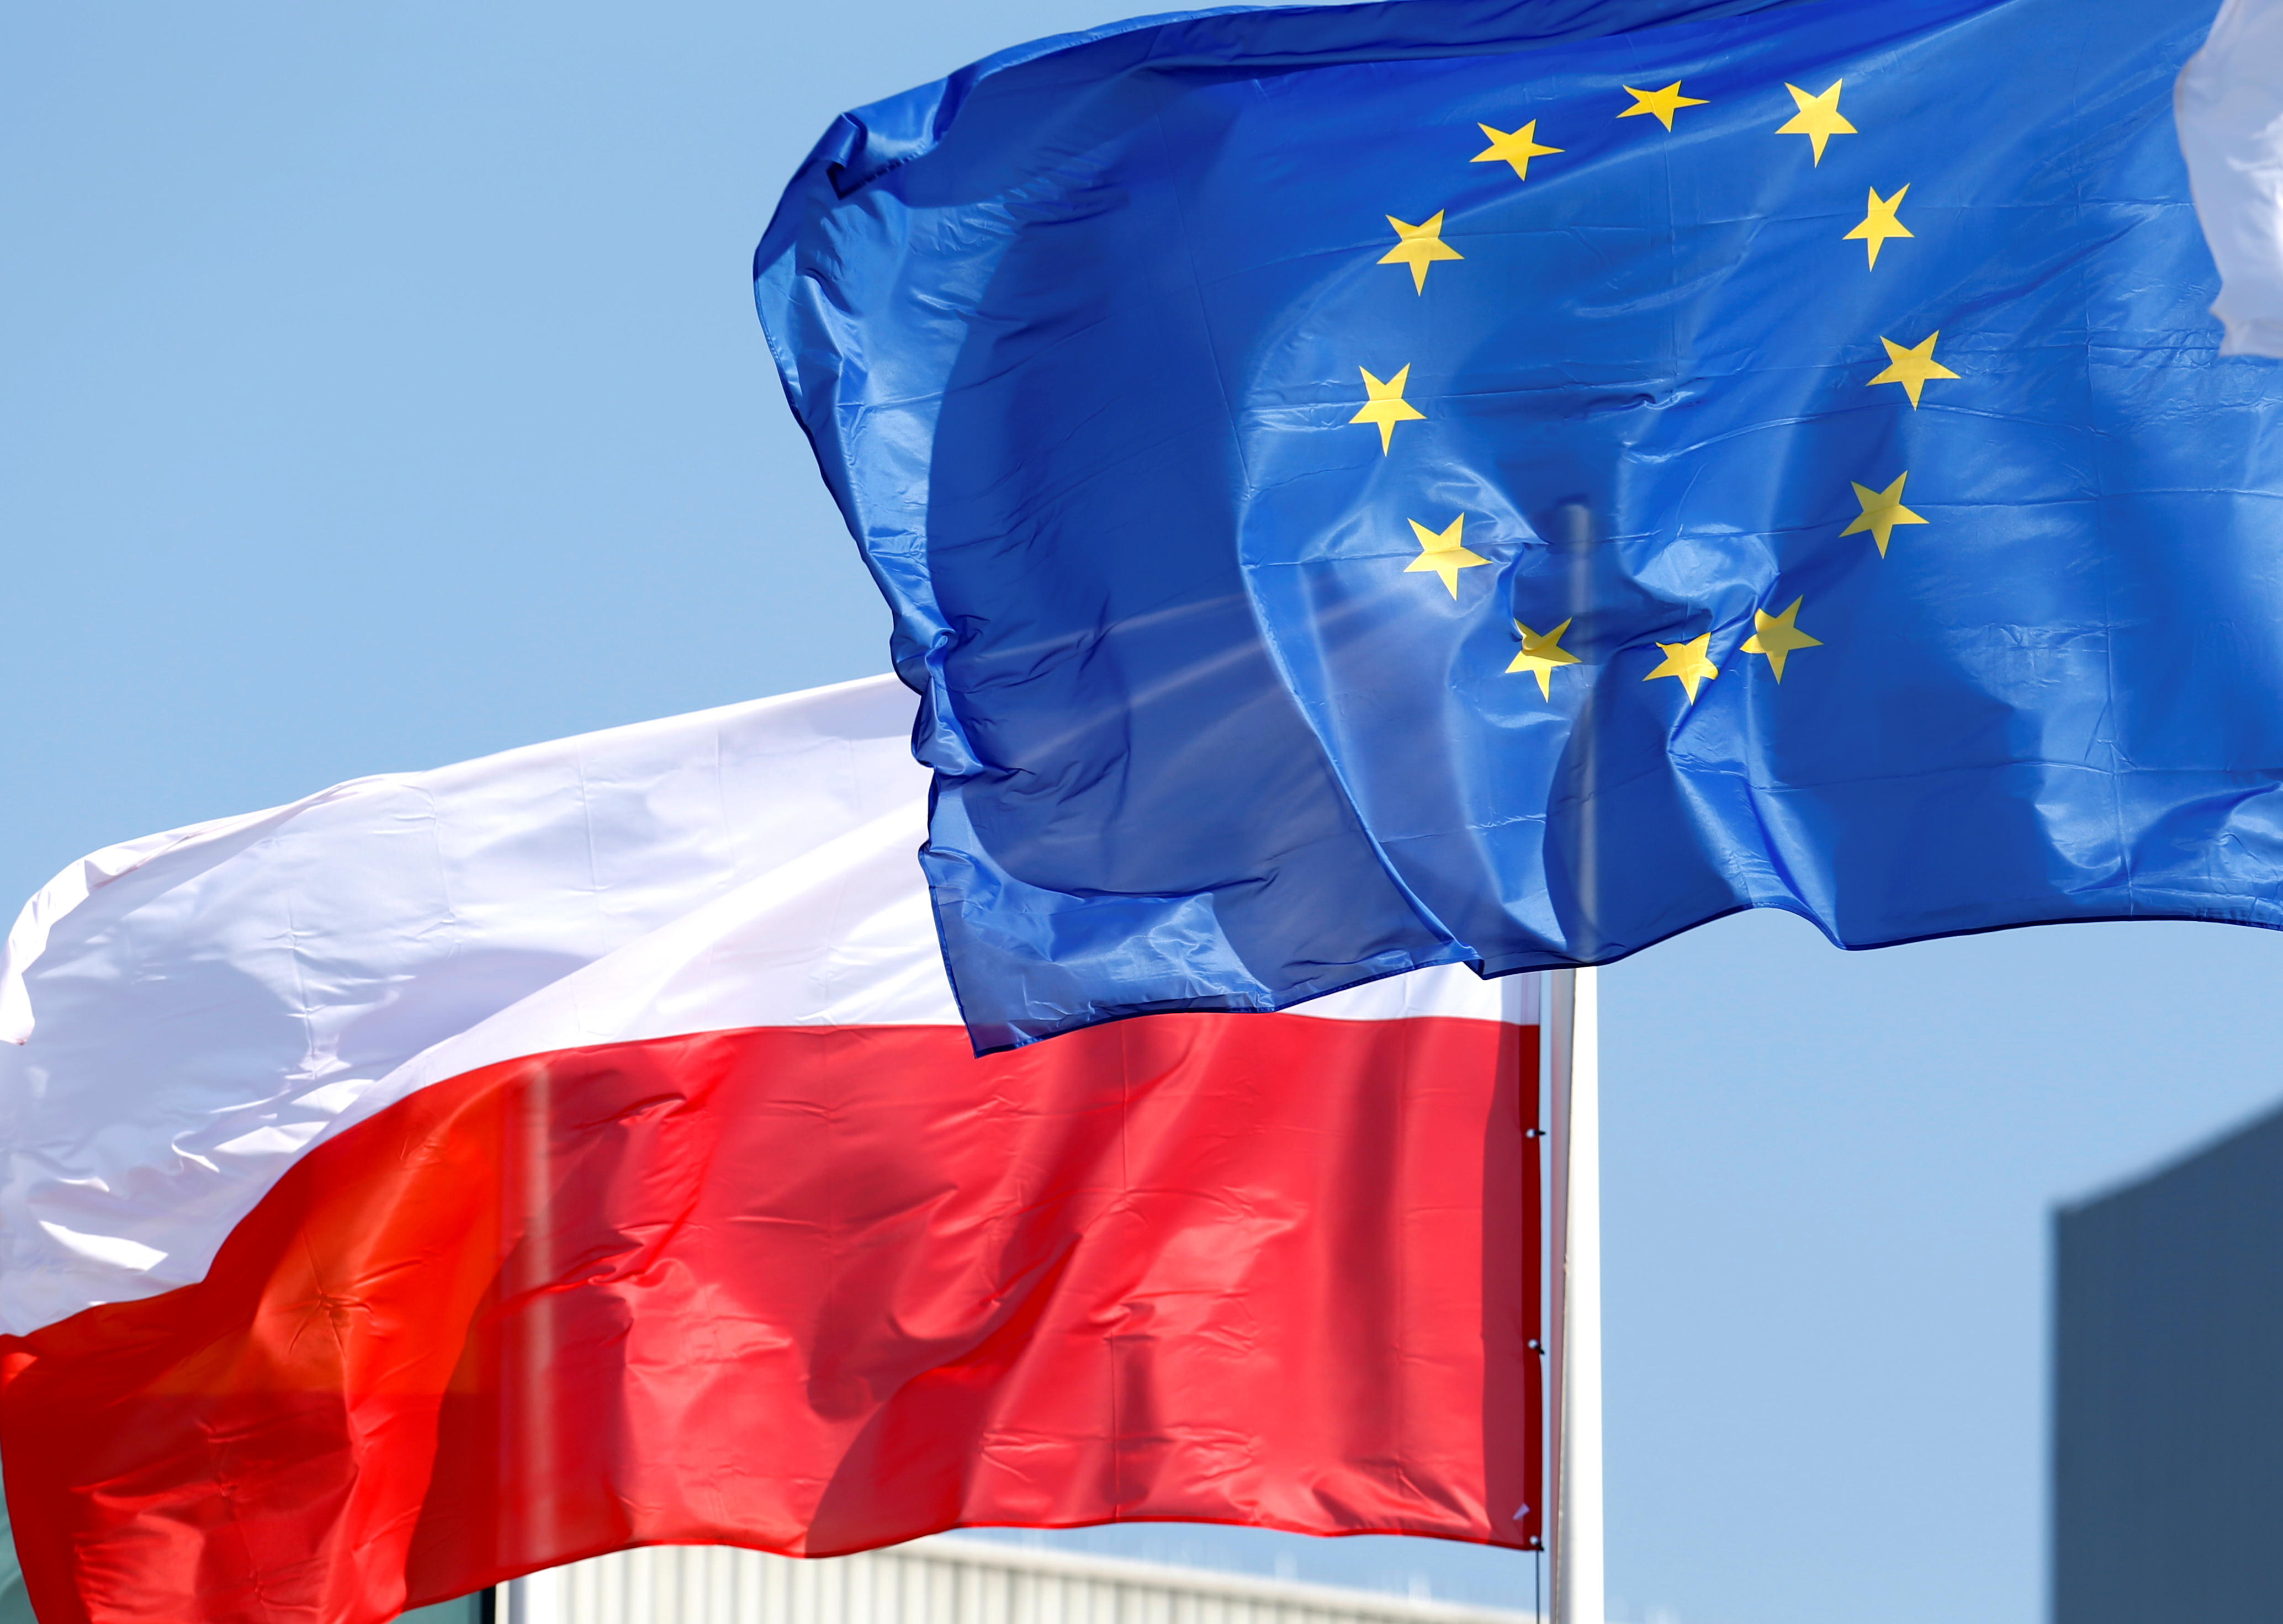 European Union and Poland's flags flutter in Mazeikiai, Lithuania